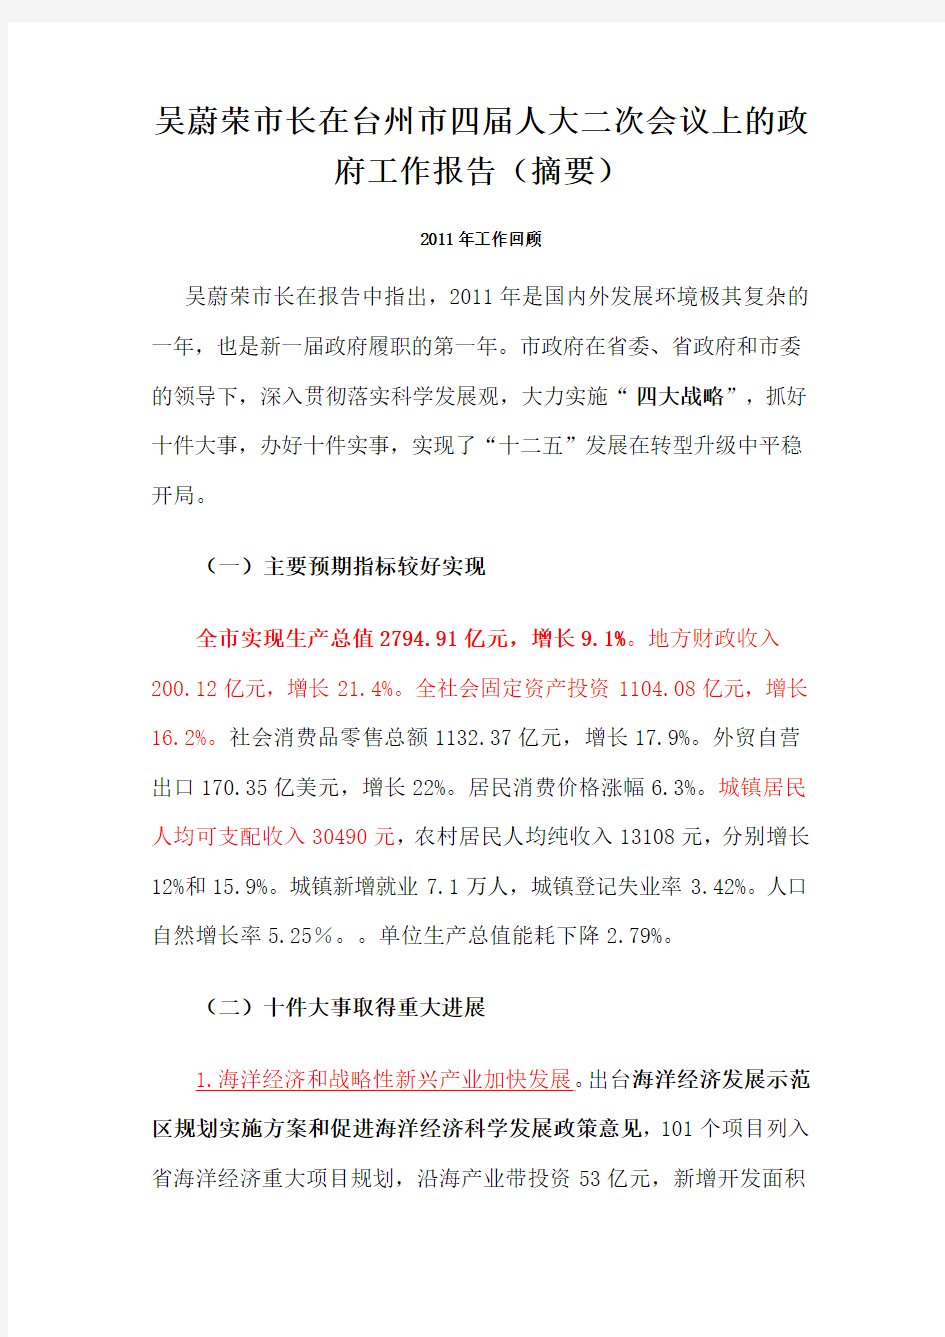 2012年台州市政府工作报告(摘要)